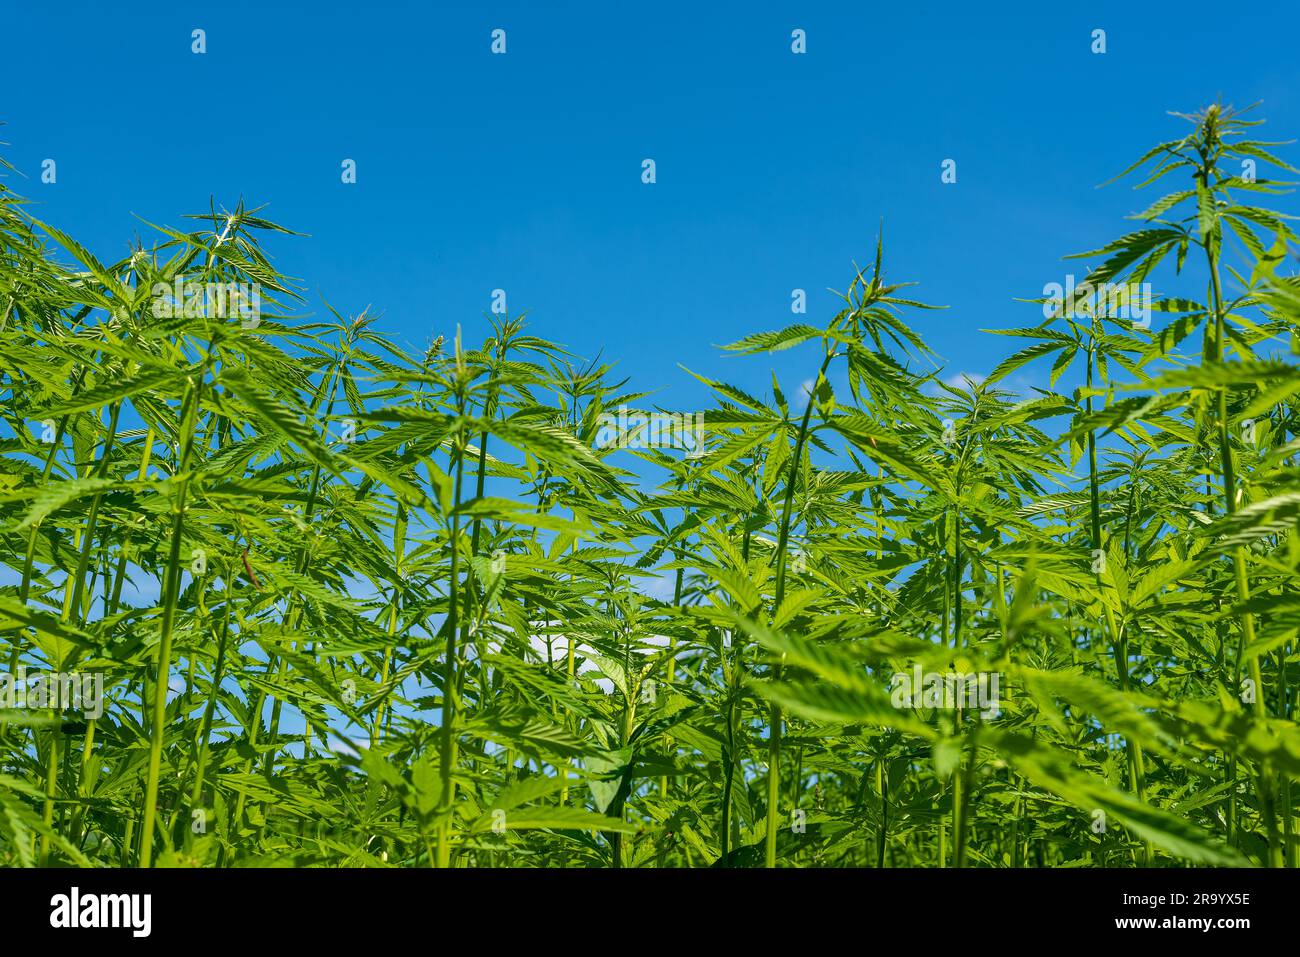 Wunderschönes Hanfblatt auf einem Marihuana-Feld unter dem blauen Himmel mit Sonne und Wolken für die Legalisierung von medizinischen Cannabisprodukten cbd thc illegales Drogenbein Stockfoto